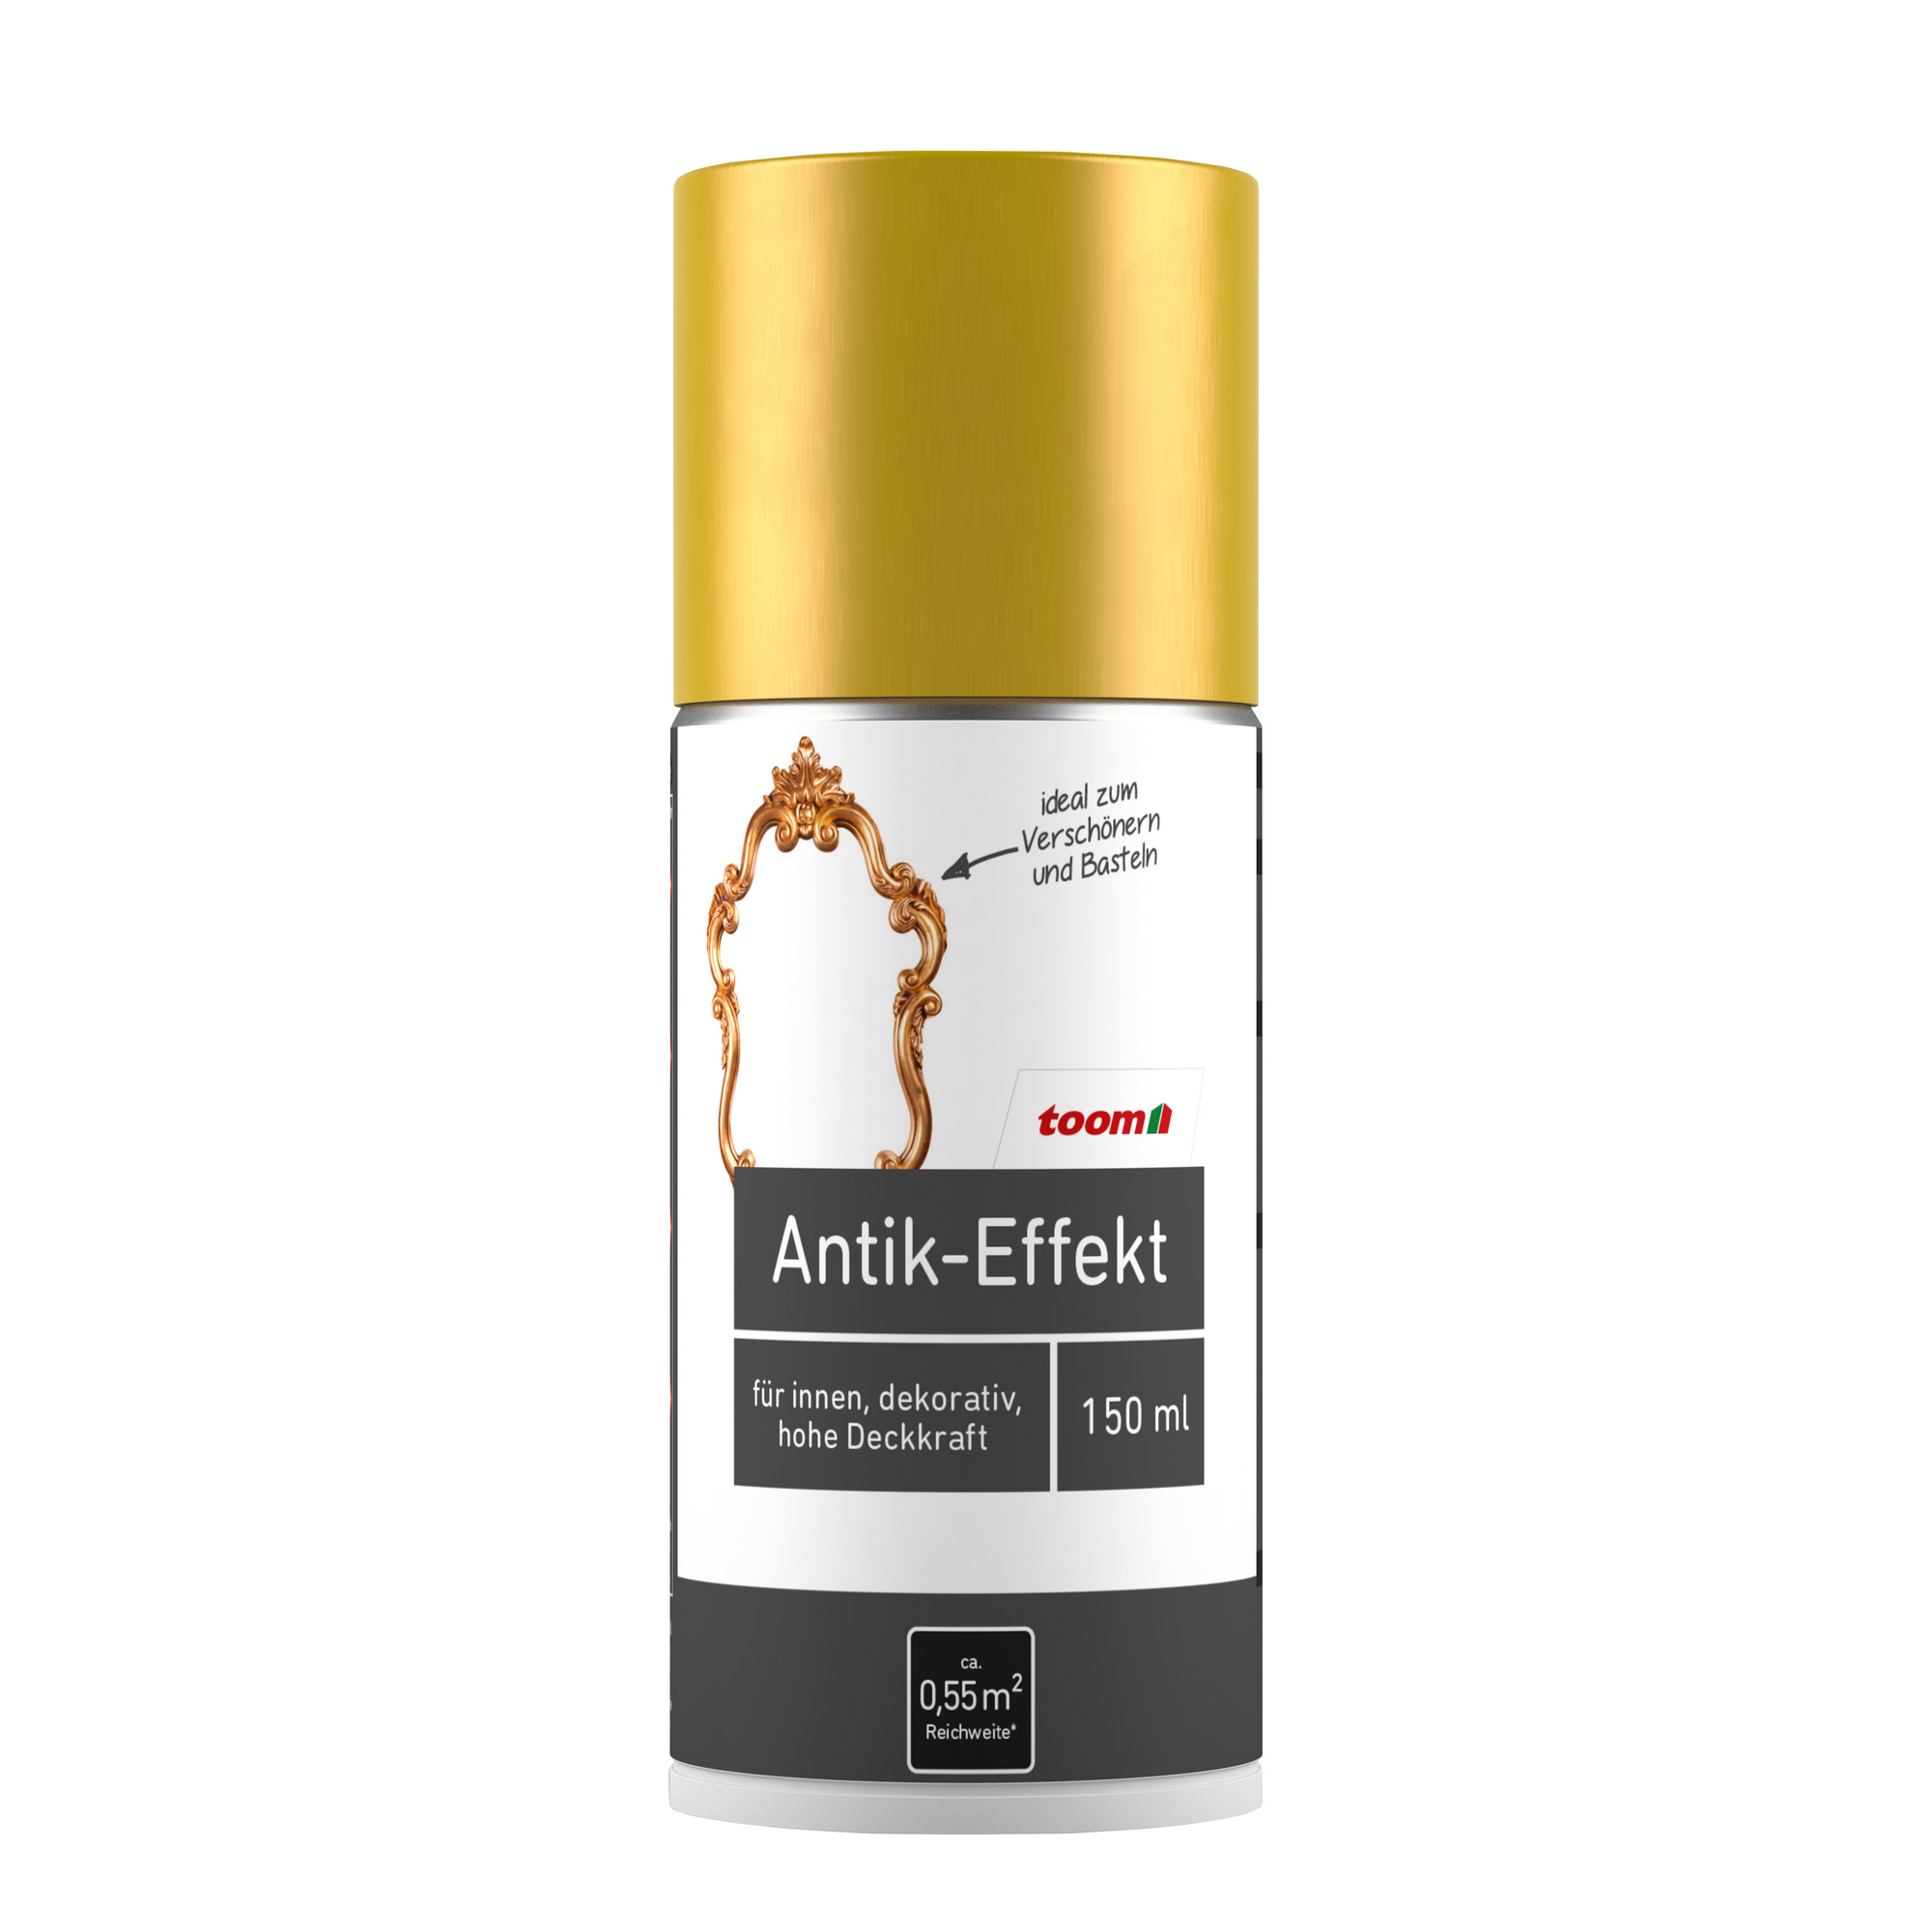 Antik-Effekt-Sprühlack gold glänzend 150 ml + product picture